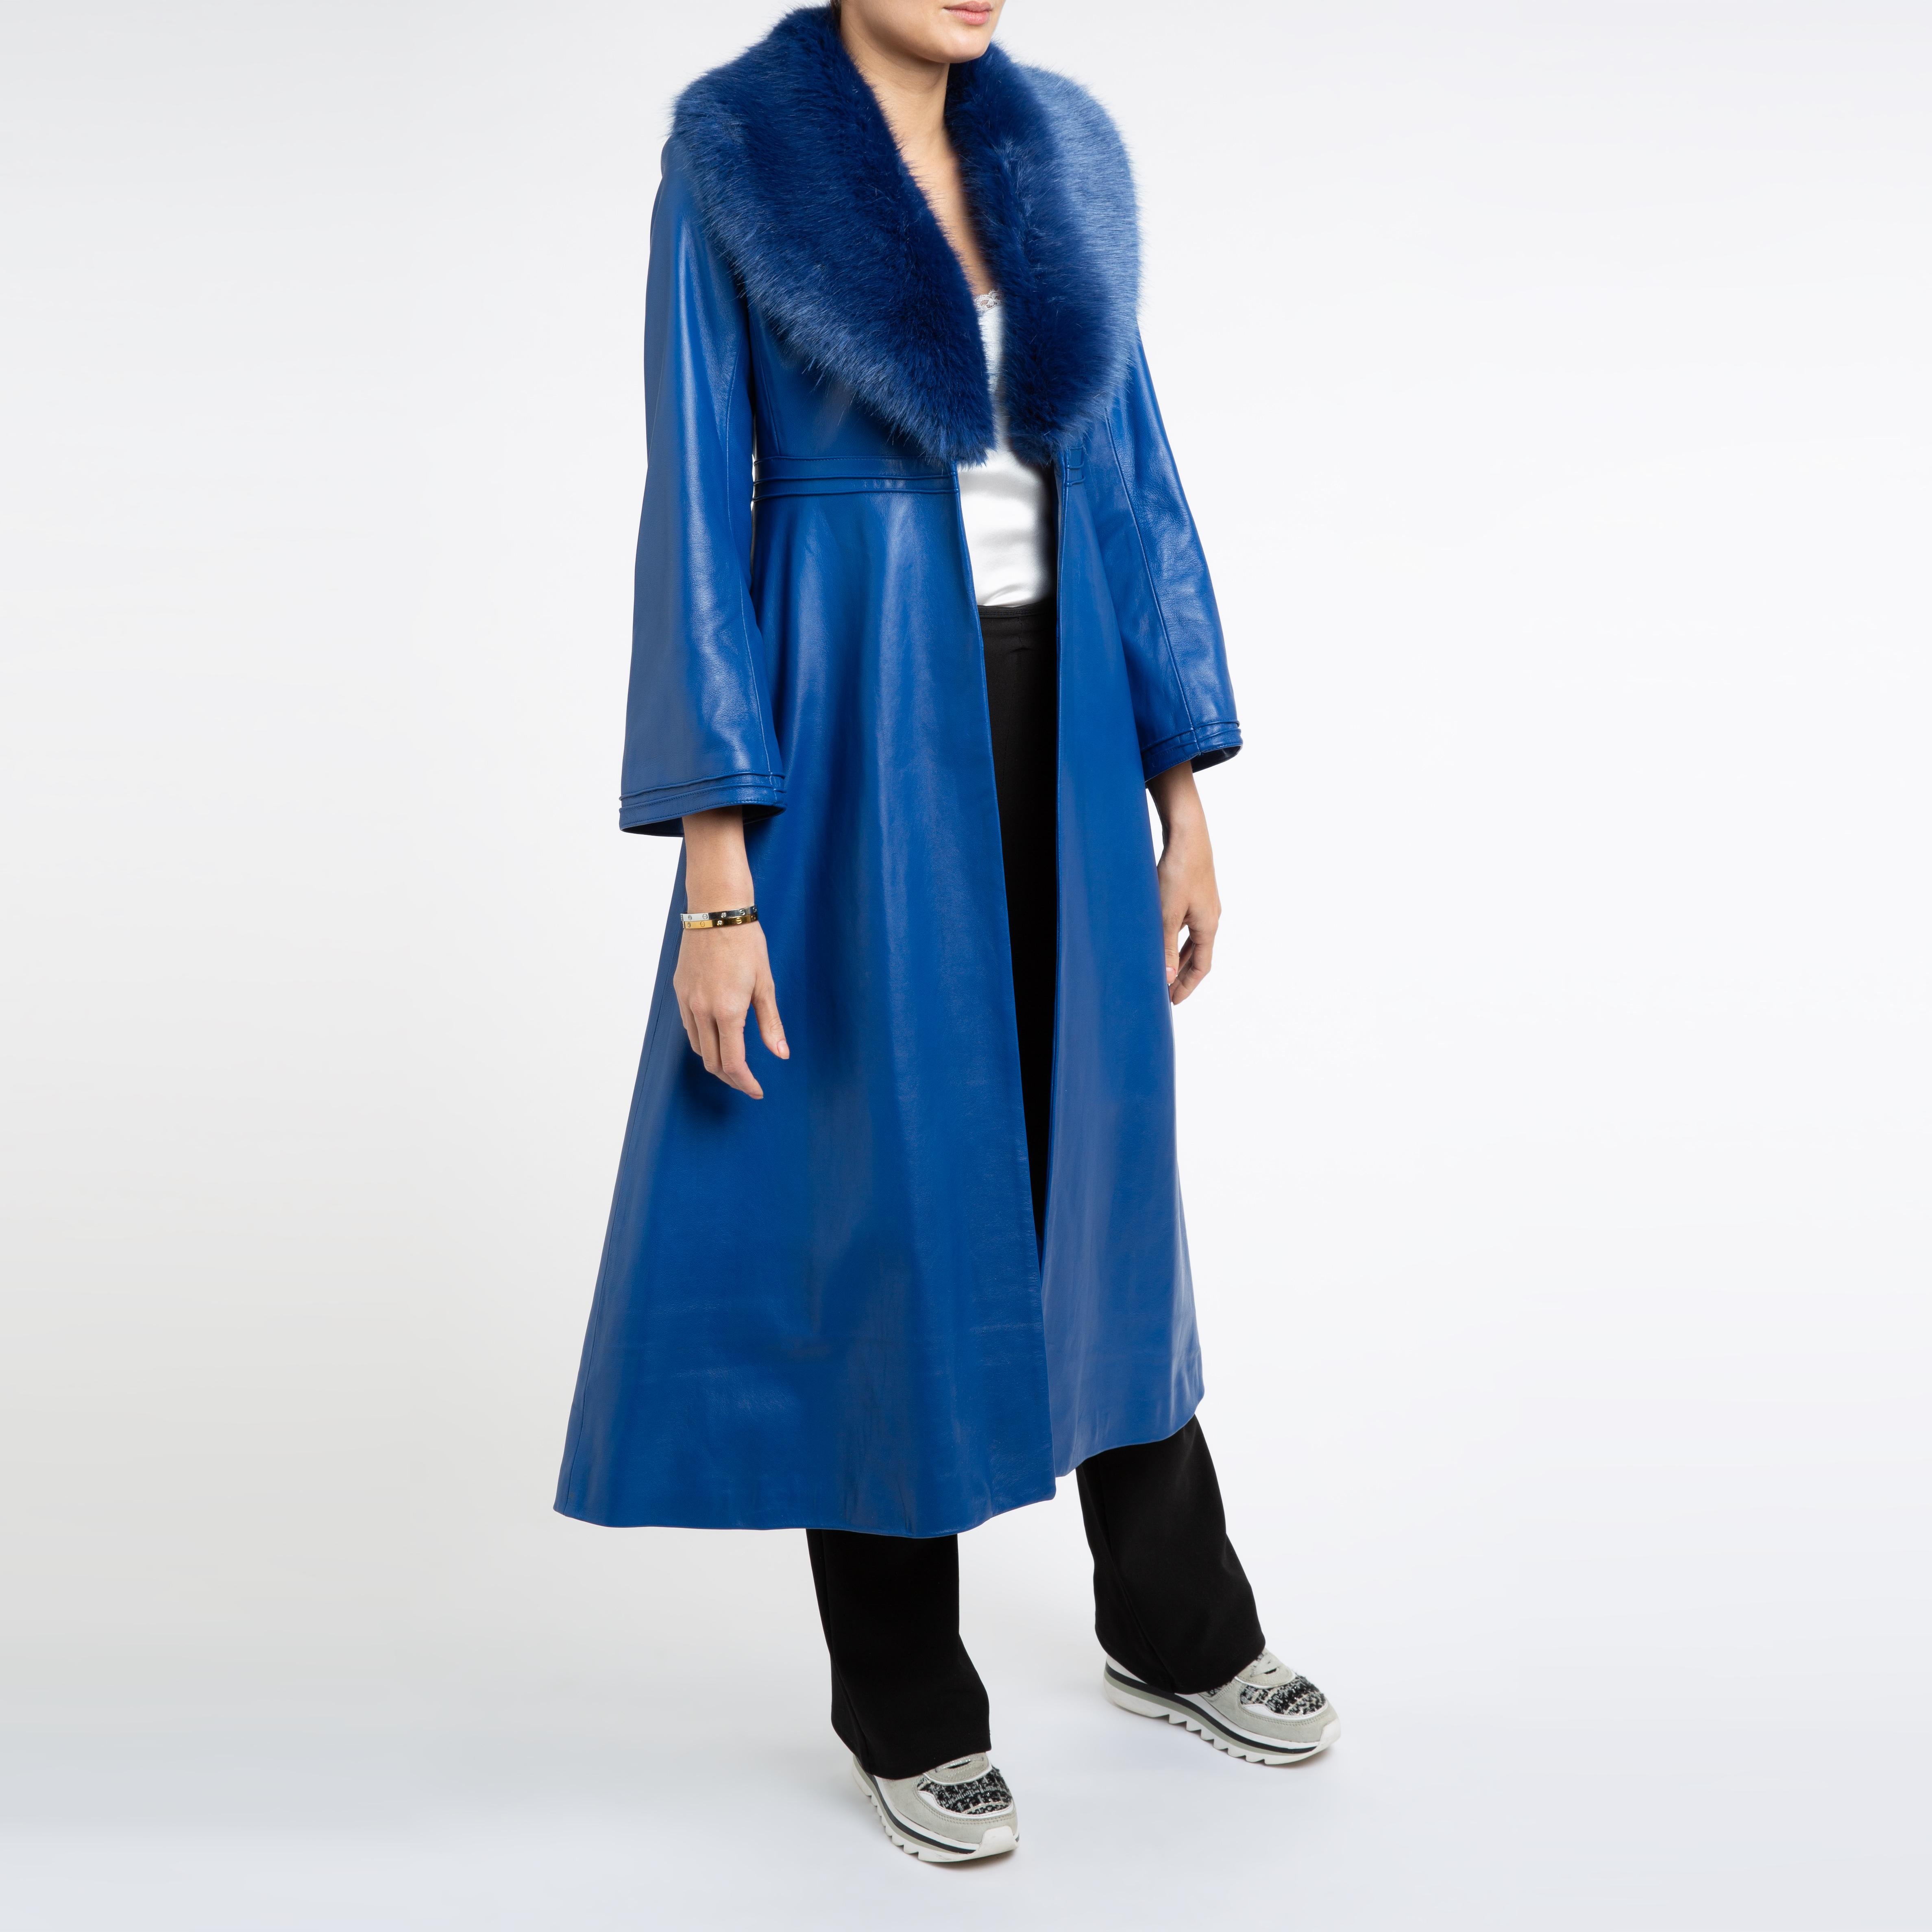 Verheyen London Edward Leather Coat in Blue with Faux Fur - Size uk 8  For Sale 4